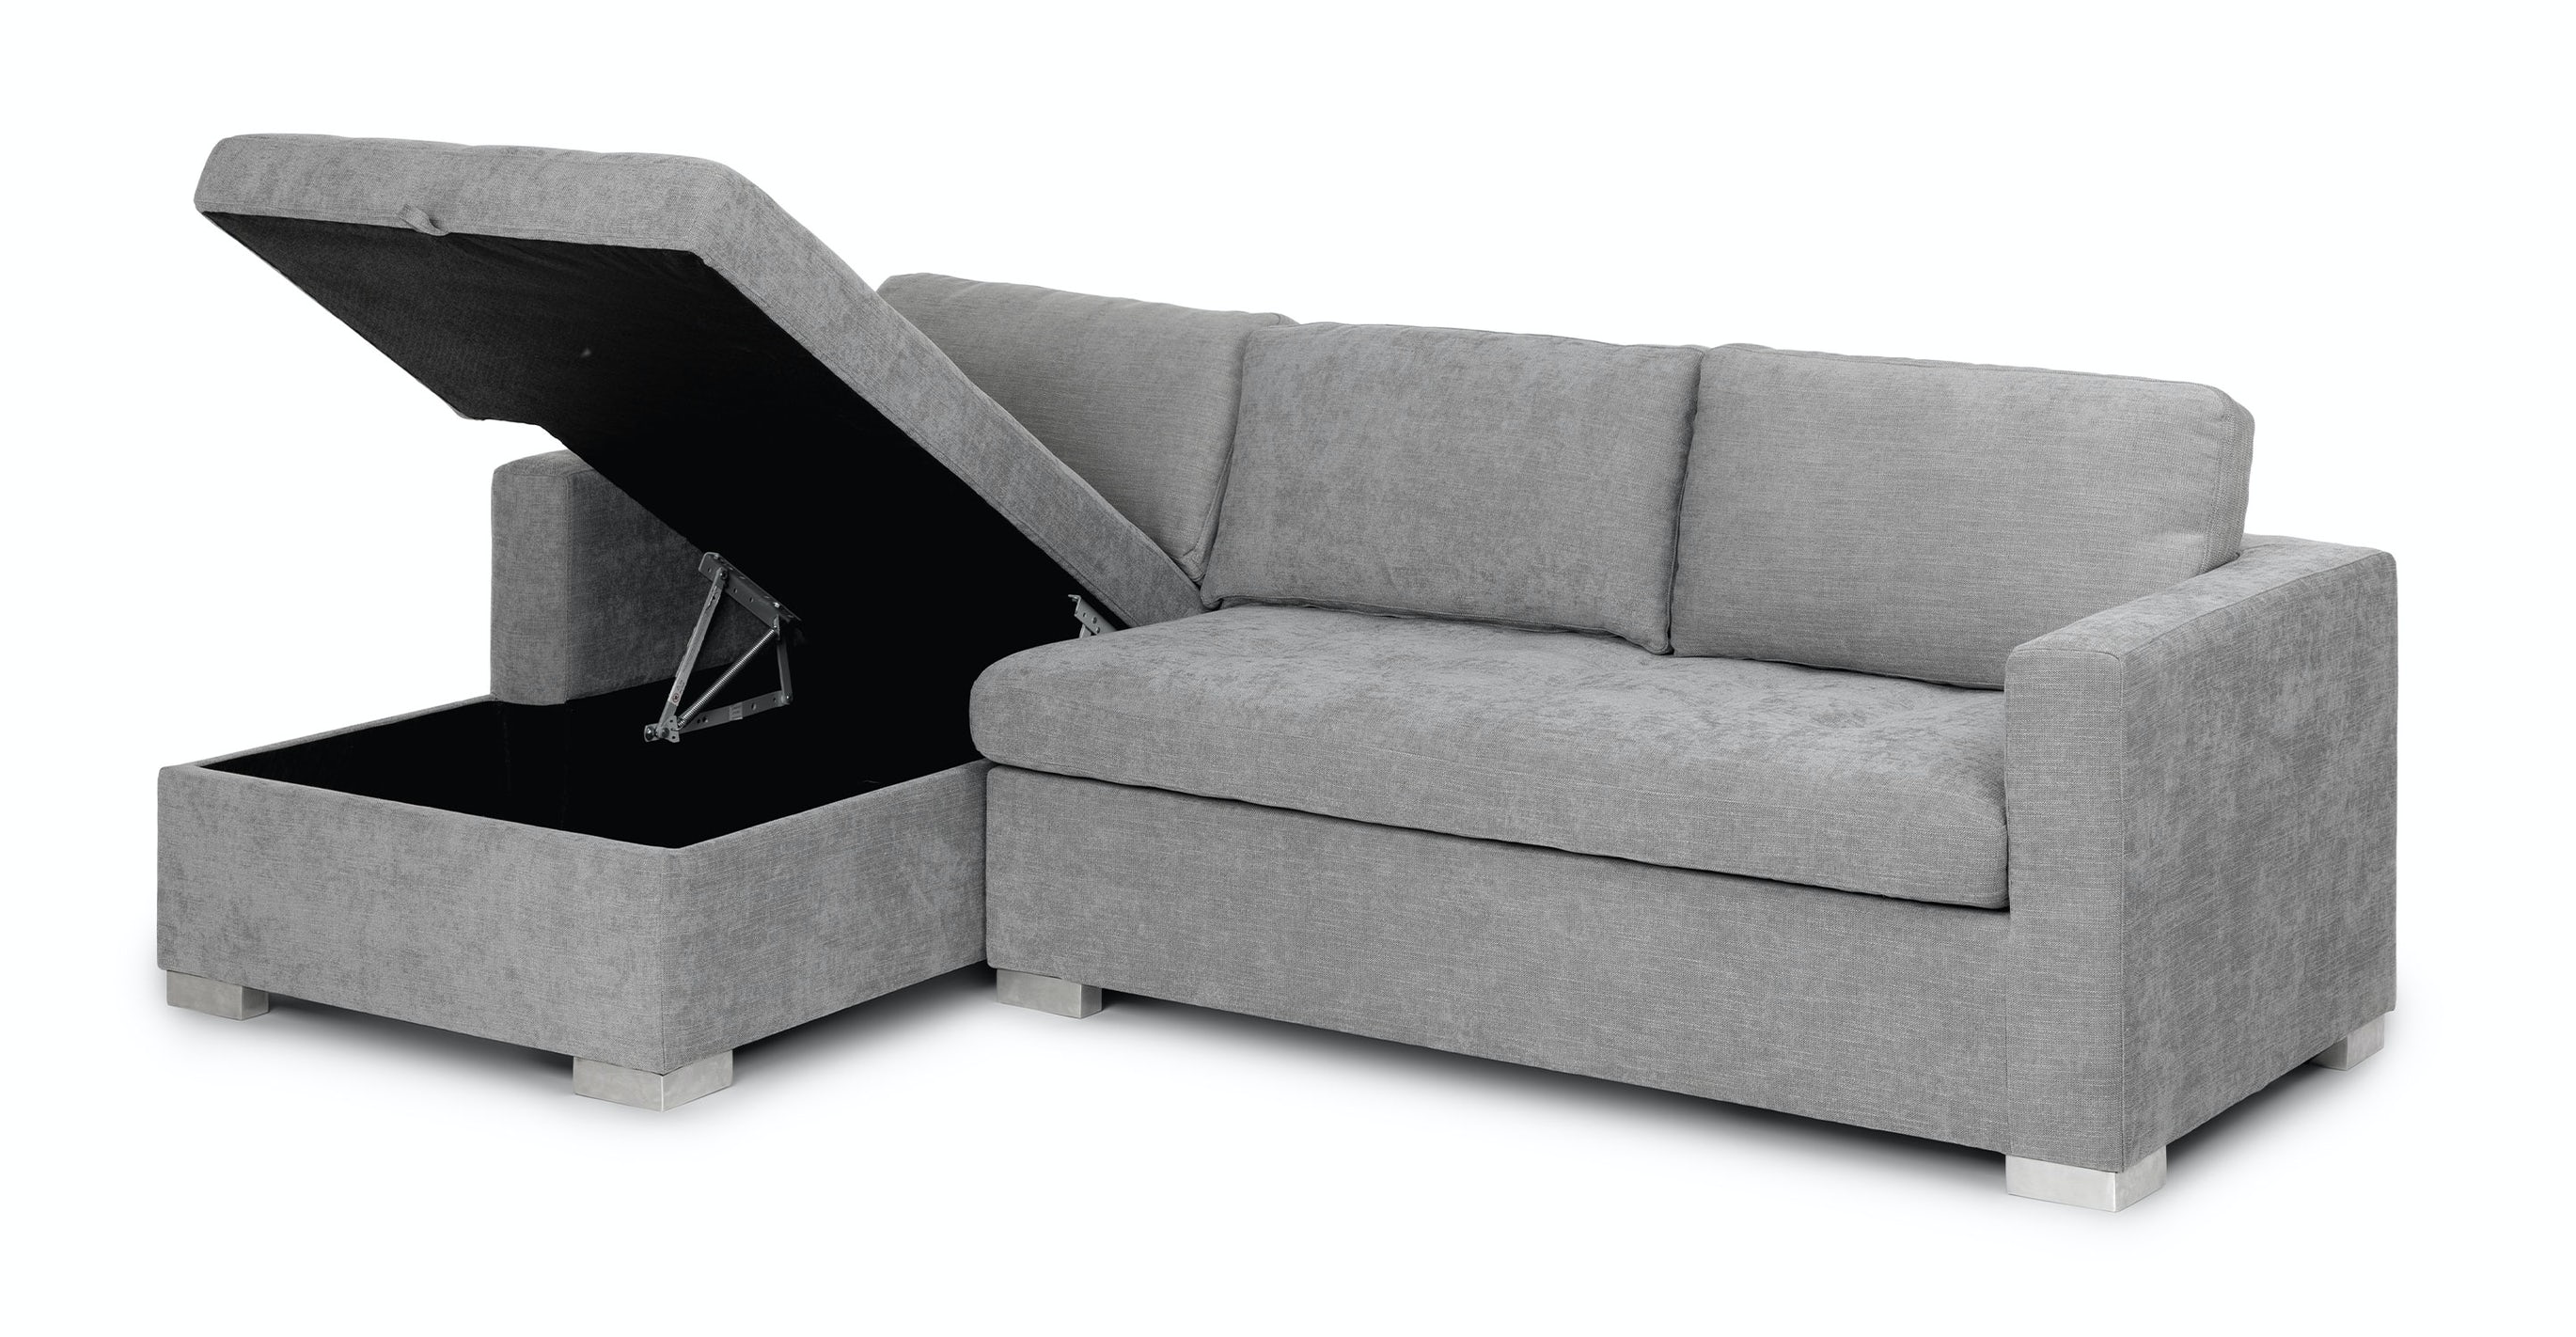 soma dawn gray sofa bed